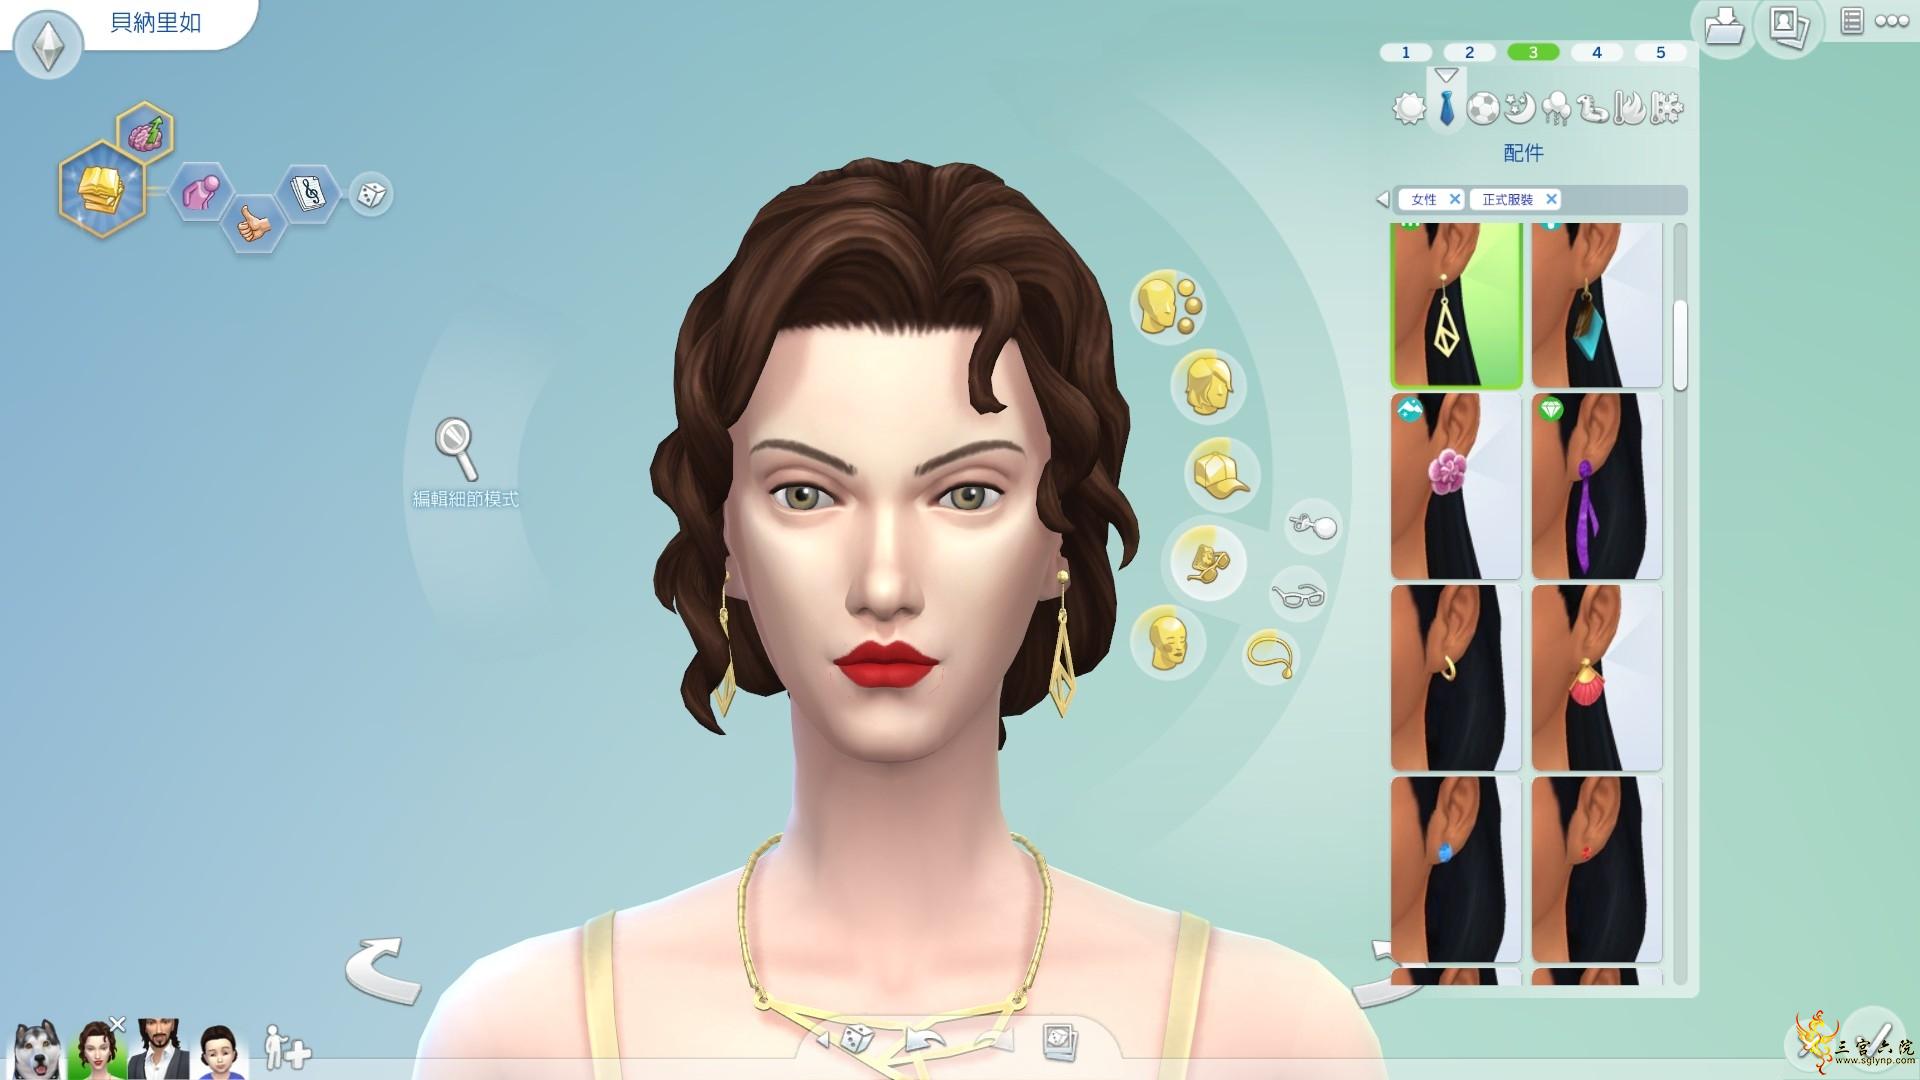 Sims 4 Screenshot 2021.07.17 - 18.47.43.88.png